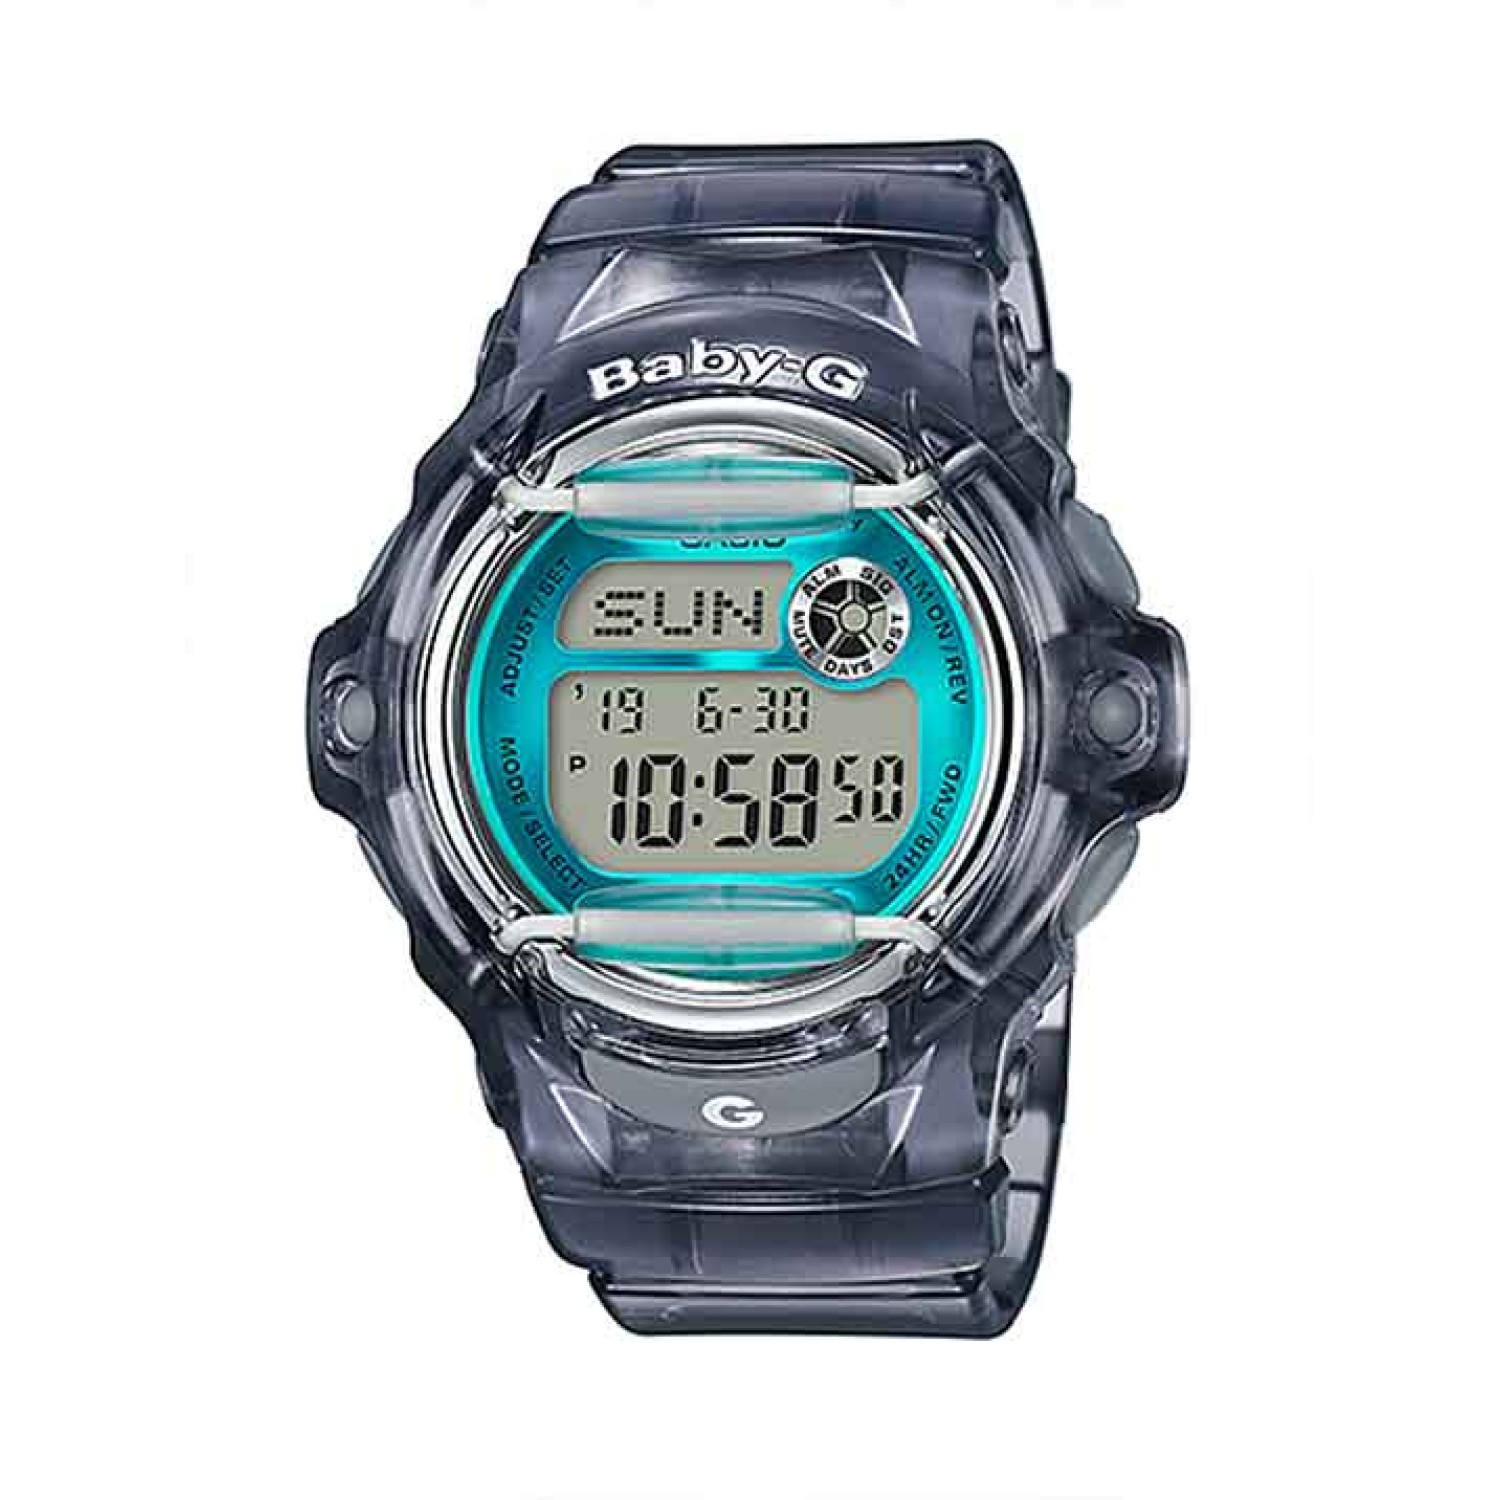 BG169R-8B Casio BabY-G Databank Watch.casio watches nz sale $219.00